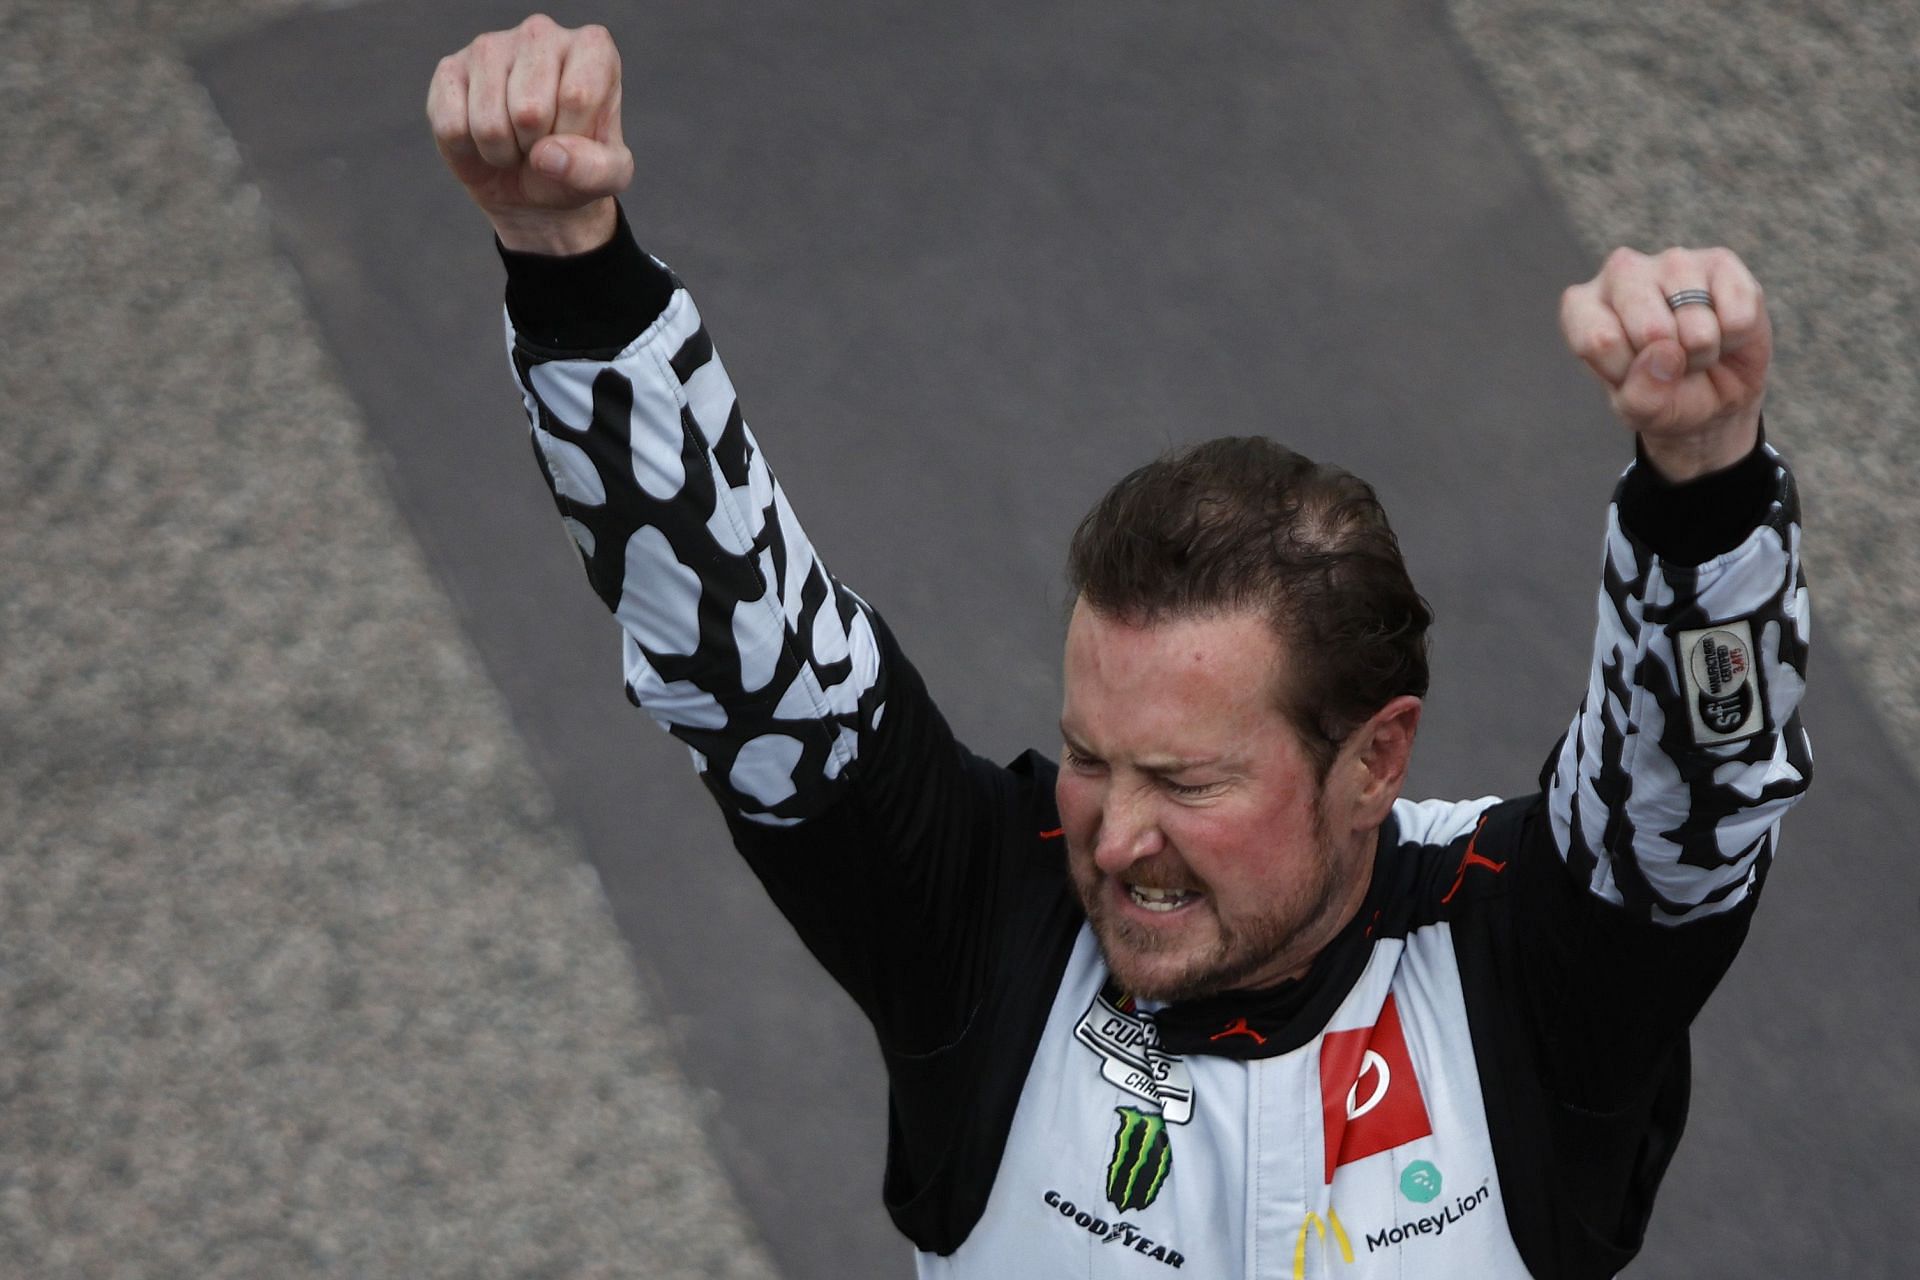 Kurt Busch celebrates after winning the NASCAR Cup Series AdventHealth 400 at Kansas Speedway